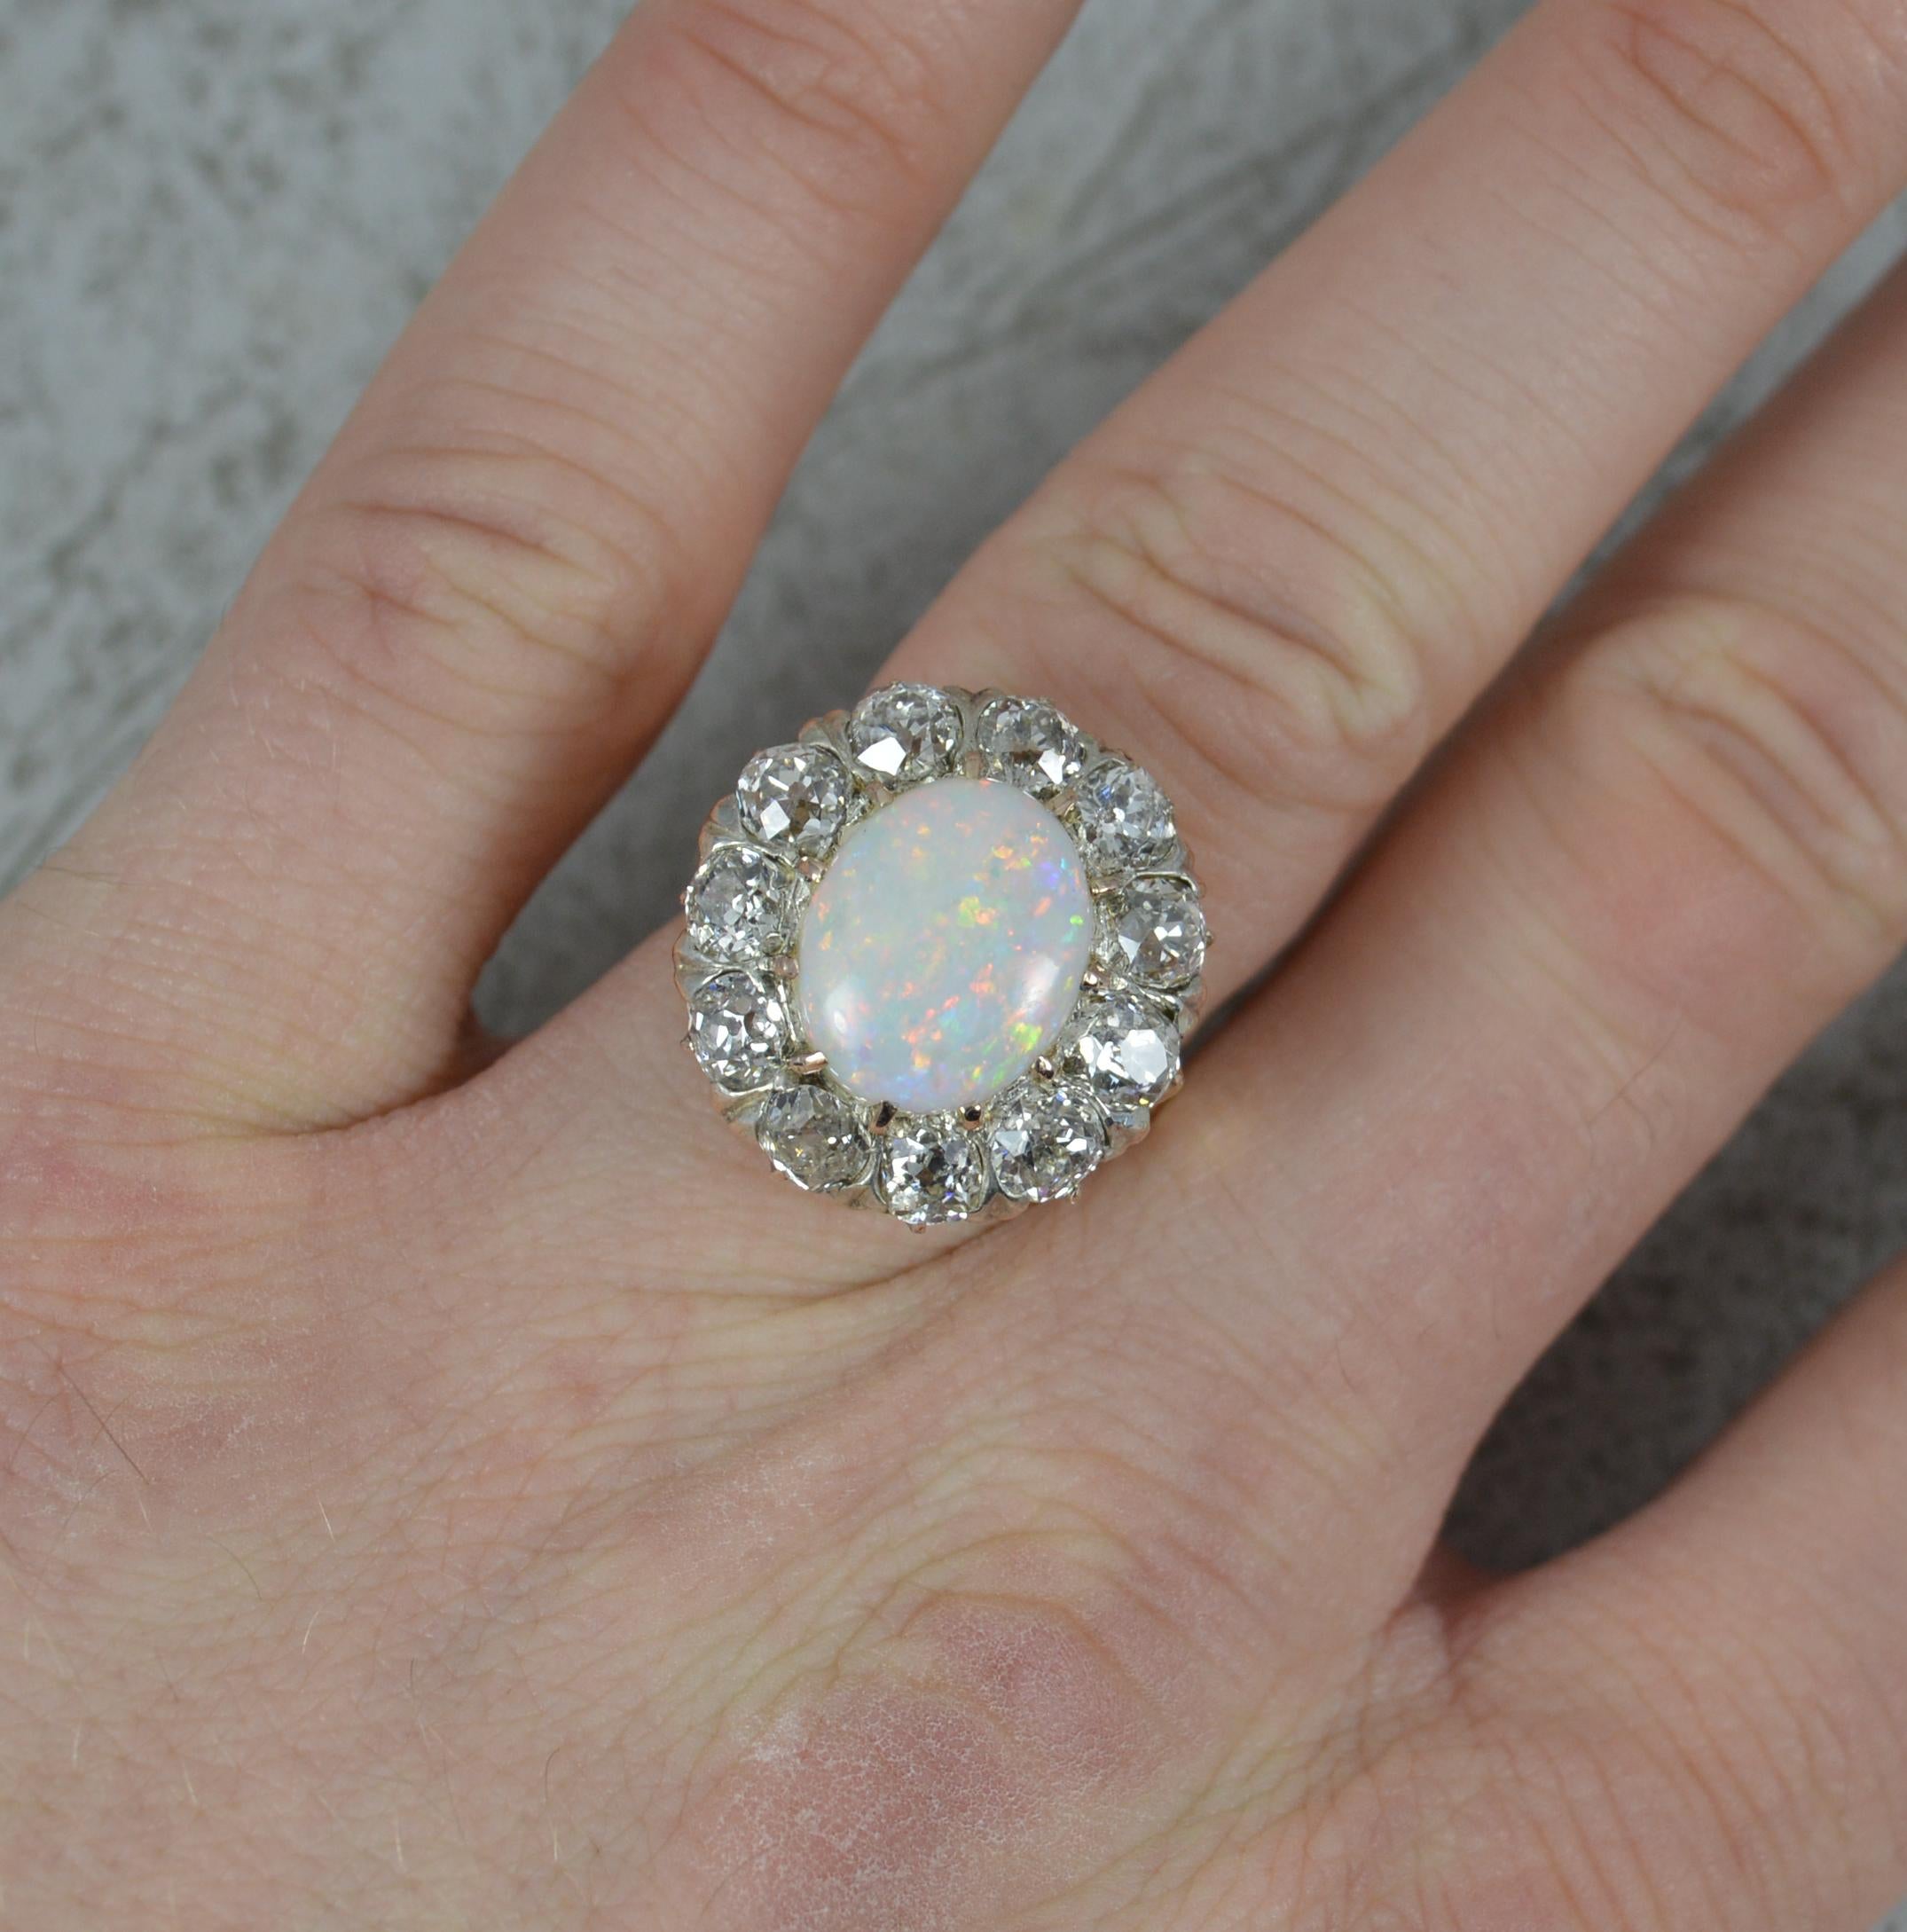 Ein hervorragender Ring mit Opal und Diamant.
Massives Beispiel aus 18 Karat Gold.
Mit einem ovalen Opal in der Mitte, ca. 10 mm x 12 mm. Ein cremefarbener Unterton mit Funken in allen Farben.
Umgeben sind sie von elf natürlichen Diamanten im